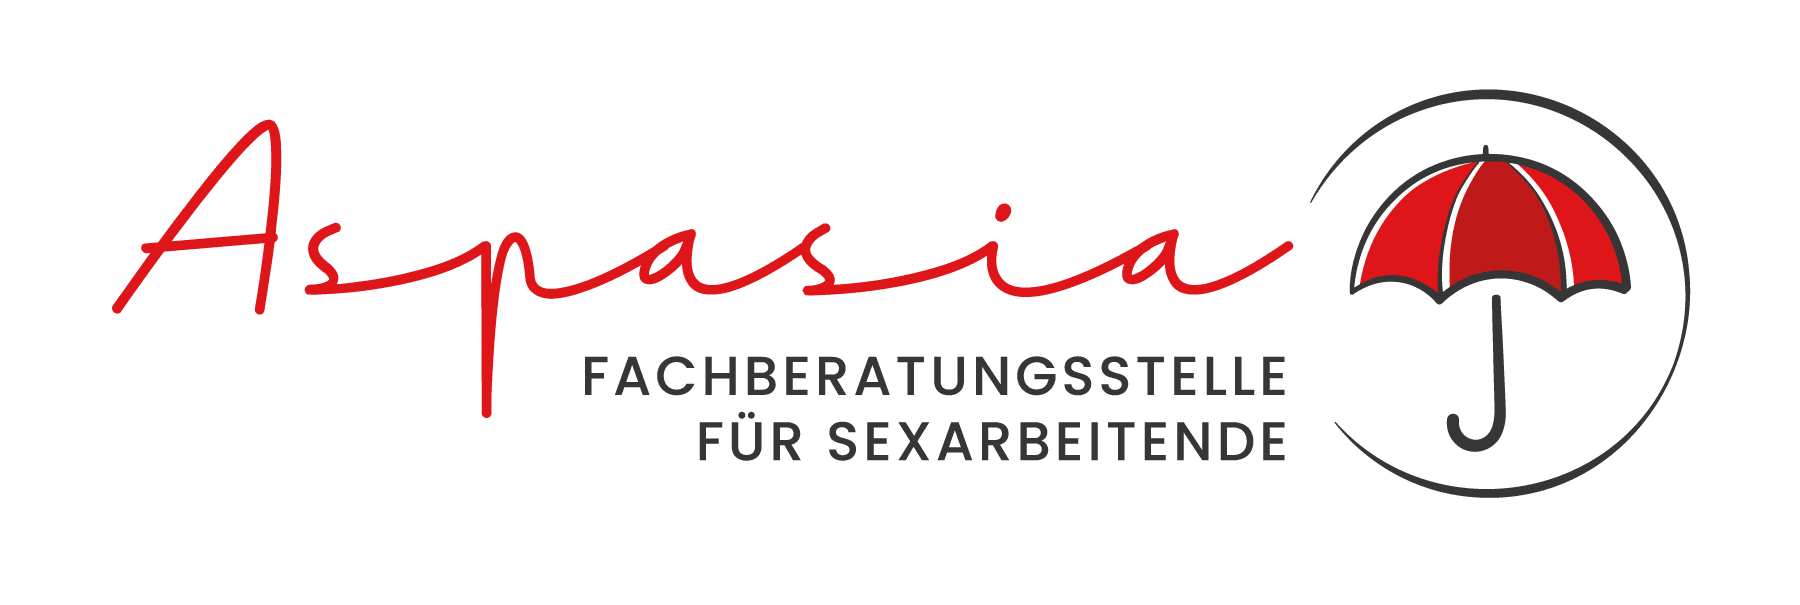 SPOTLIGHT Pforzheim - Diese Grafik beinhaltet das Logo der Beratungsstelle "Aspasia" für Sexarbeitende.